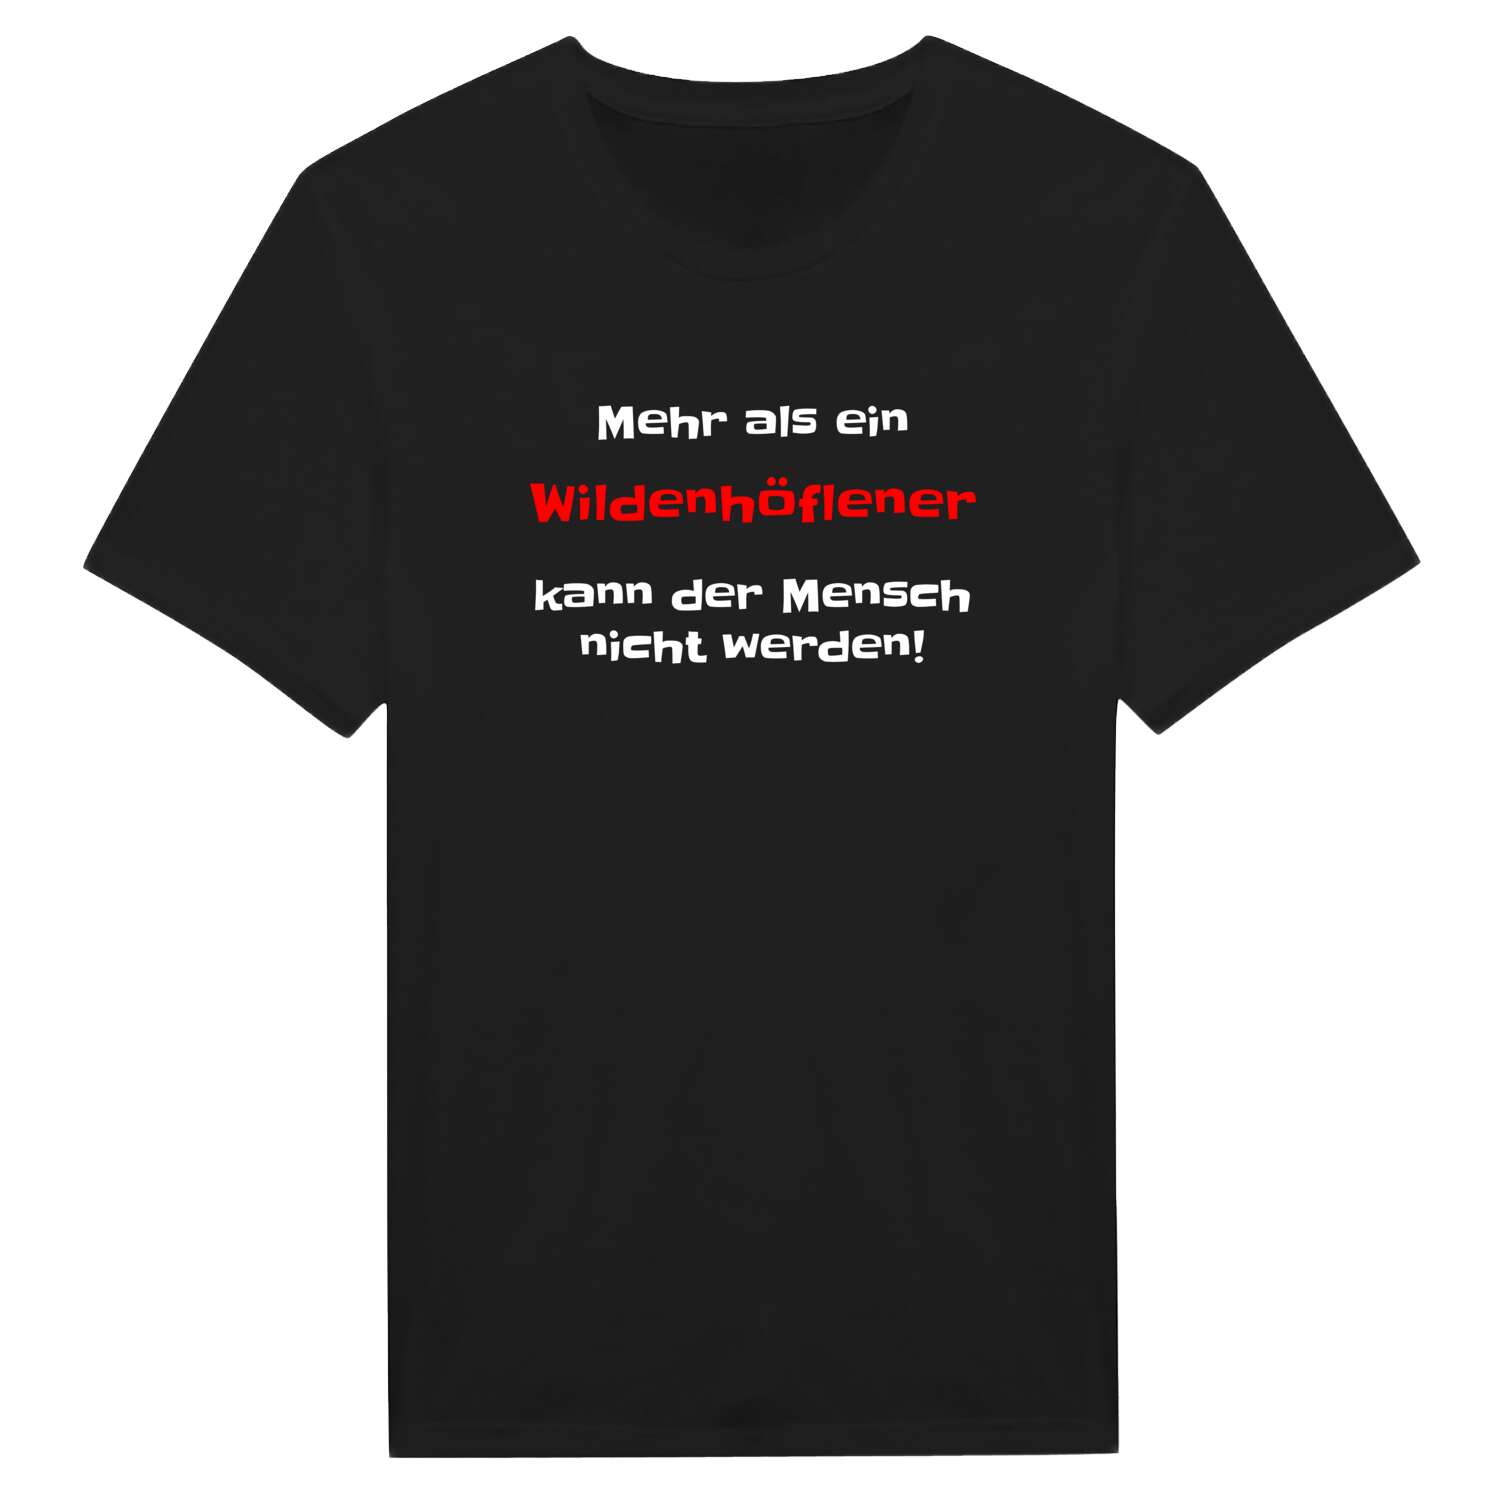 Wildenhöfle T-Shirt »Mehr als ein«